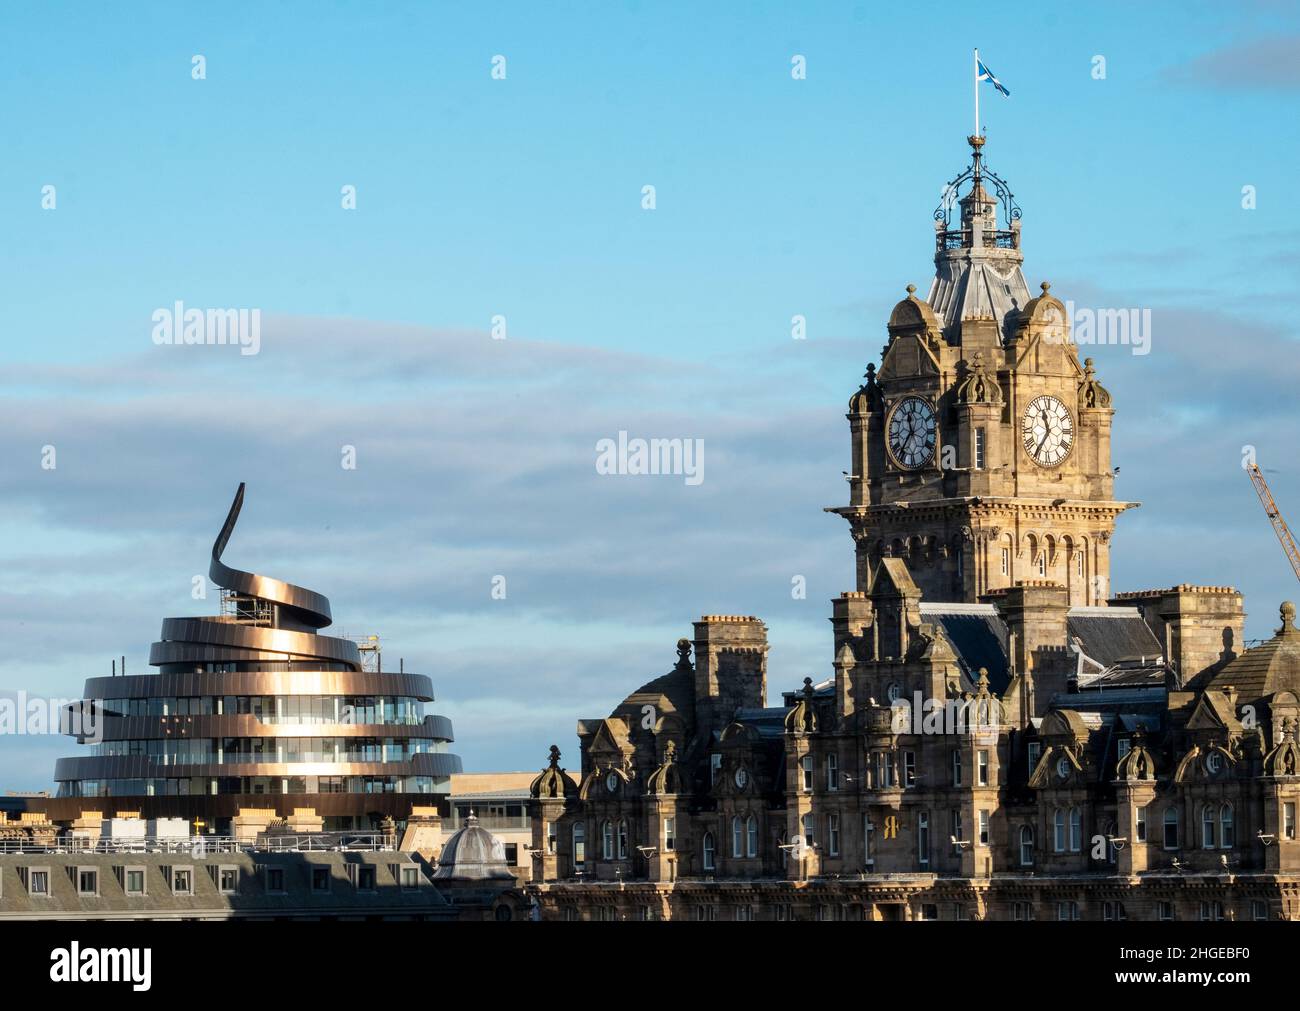 Blick auf die Skyline von Edinburgh mit dem neuen St James Centre Hotel und dem Balmoral Hotel Uhrenturm auf der rechten Seite. Stockfoto